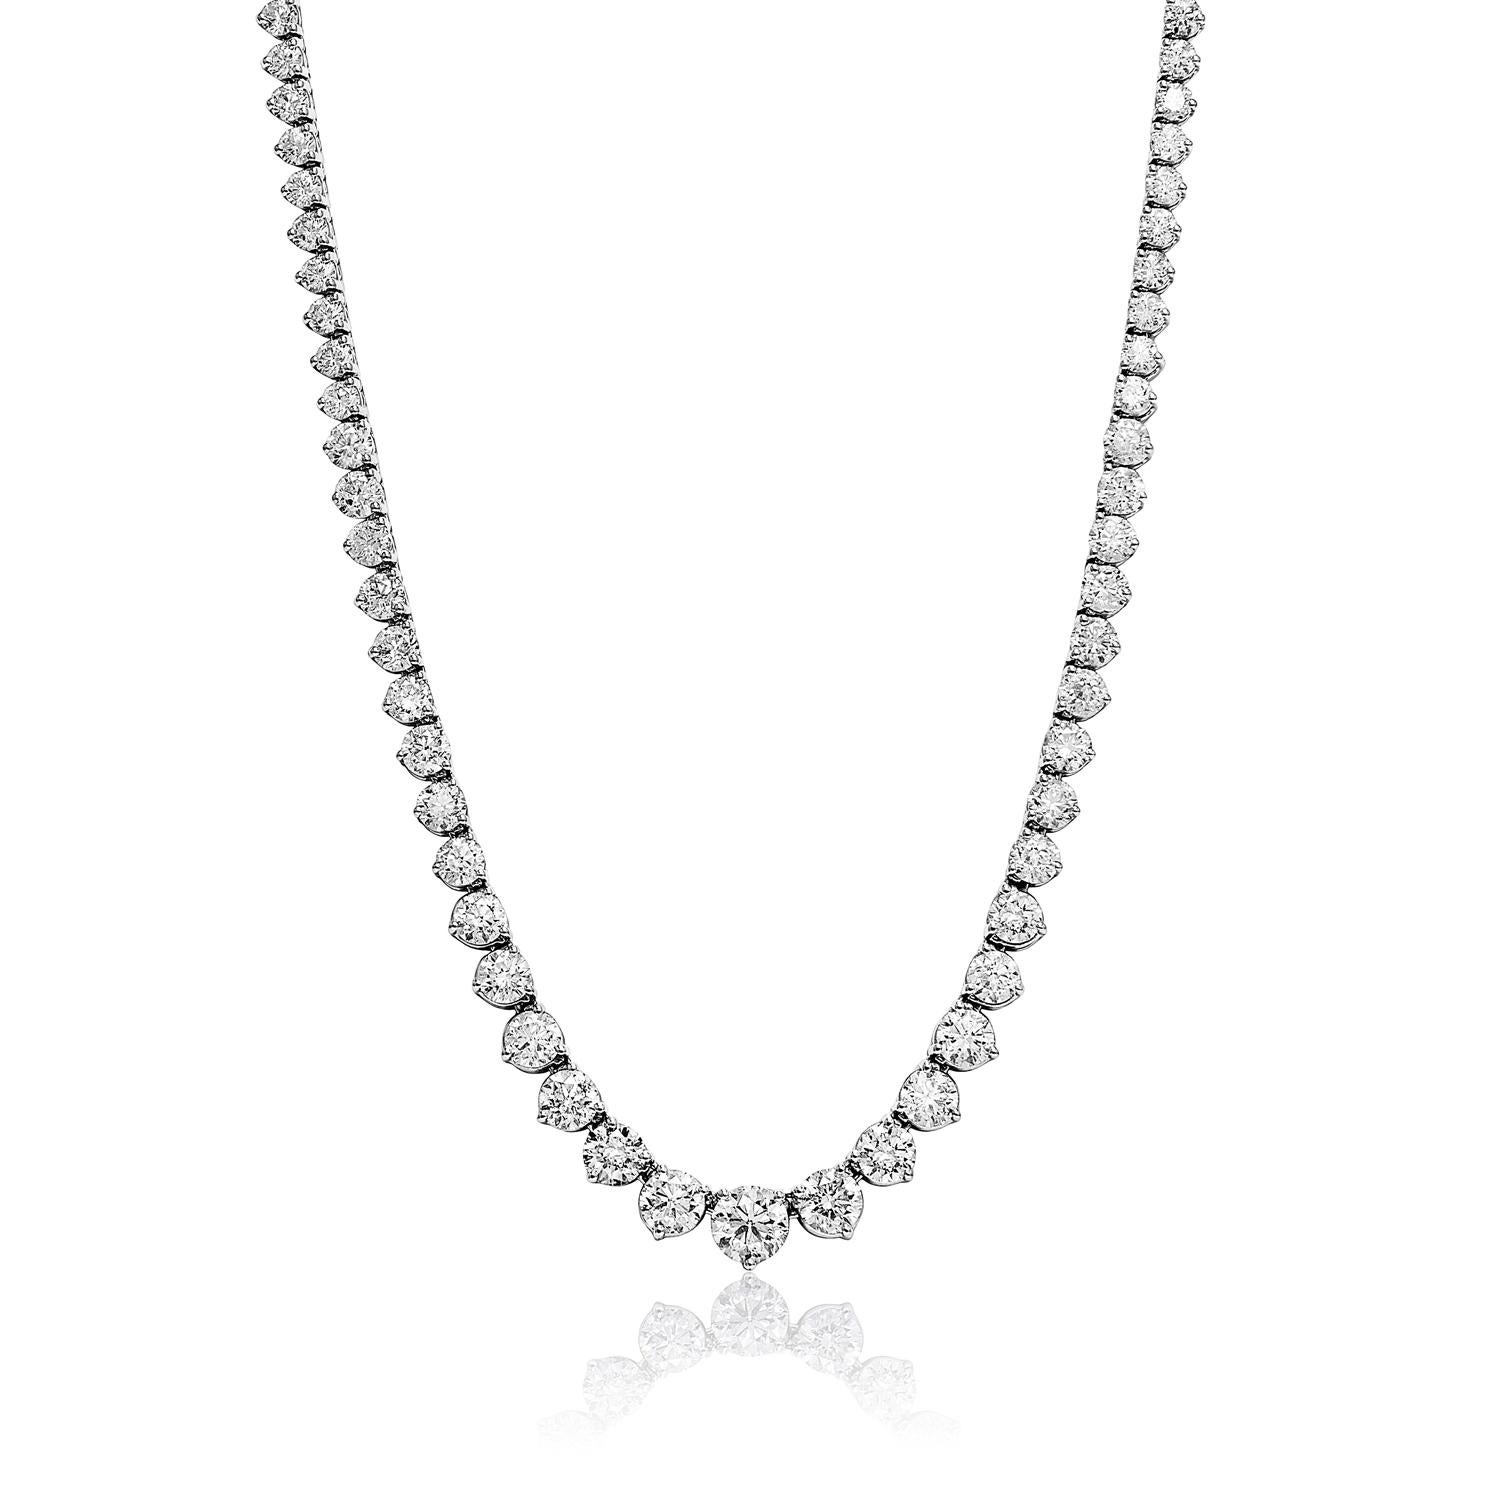 Wir stellen die Earth Mined Diamond Necklace für Damen vor. Diese wunderschöne Halskette ist mit einem atemberaubenden runden Diamanten im Brillantschliff mit einem Gewicht von 22,96 Karat versehen. Der Diamant ist in 14 Karat Weißgold gefasst und